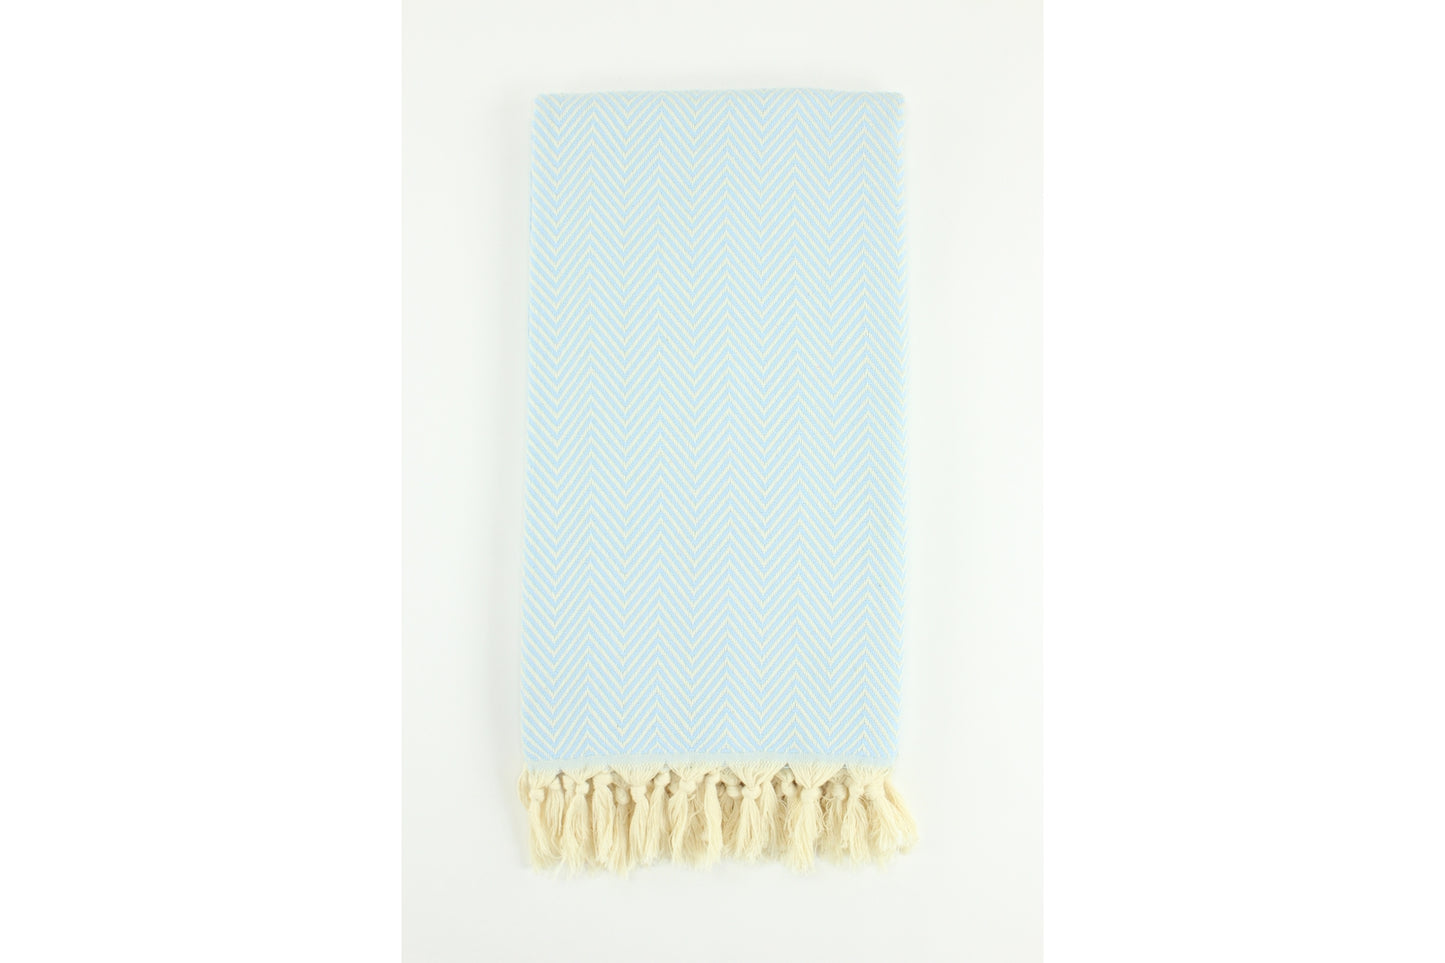 Premium Turkish Plain Herringbone Towel Peshtemal Fouta (Light Blue)